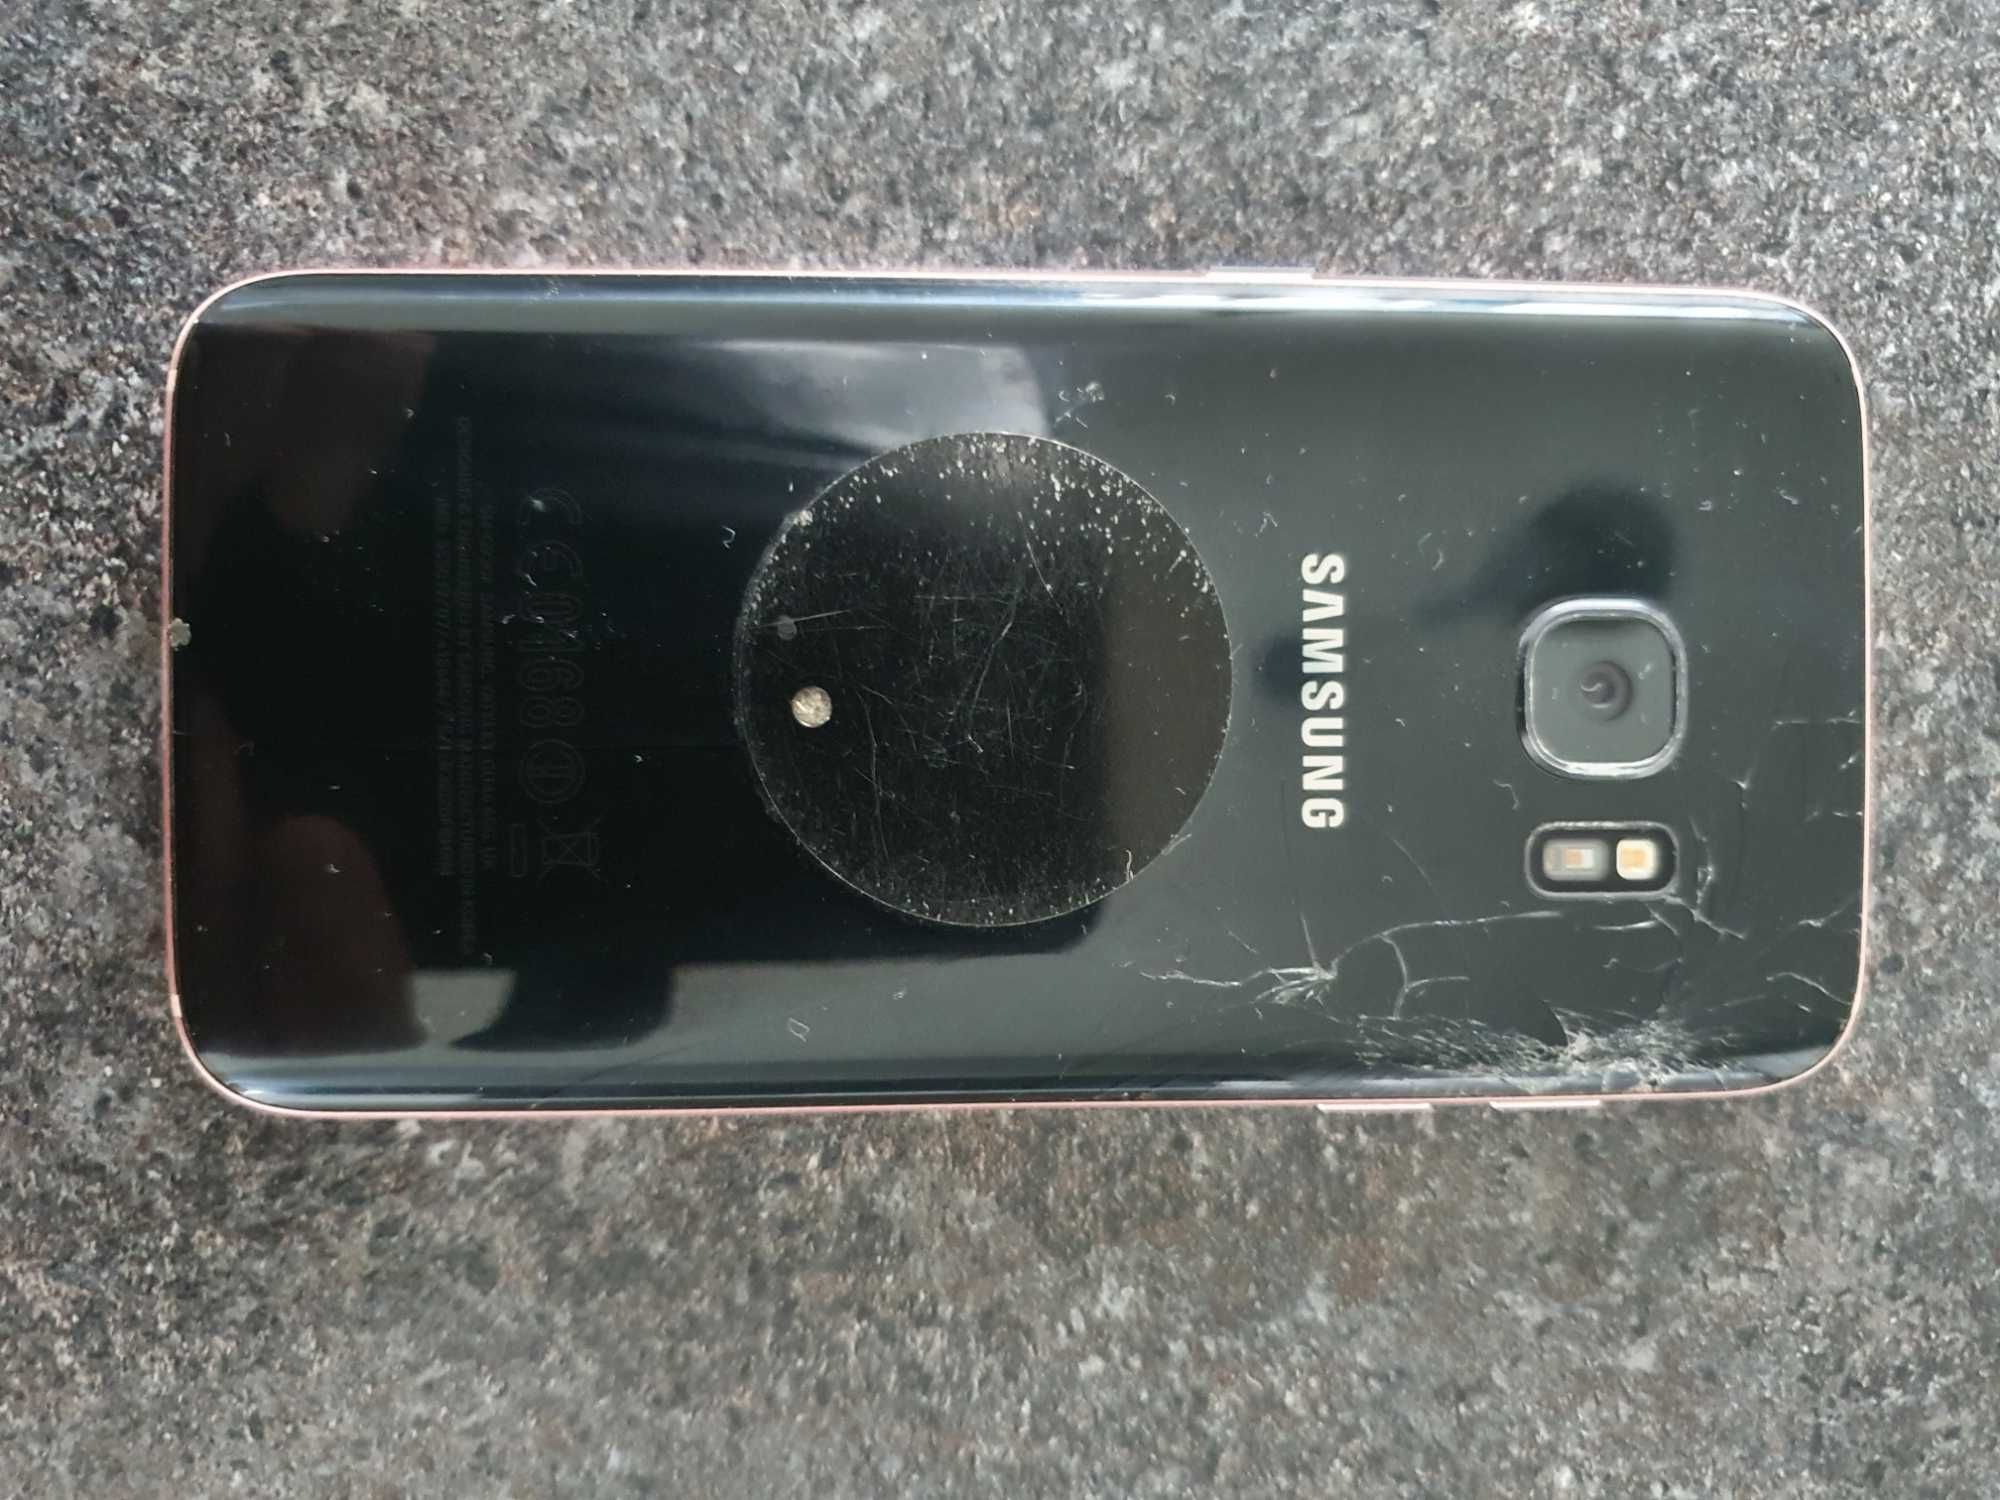 Samsung galaxy s 7